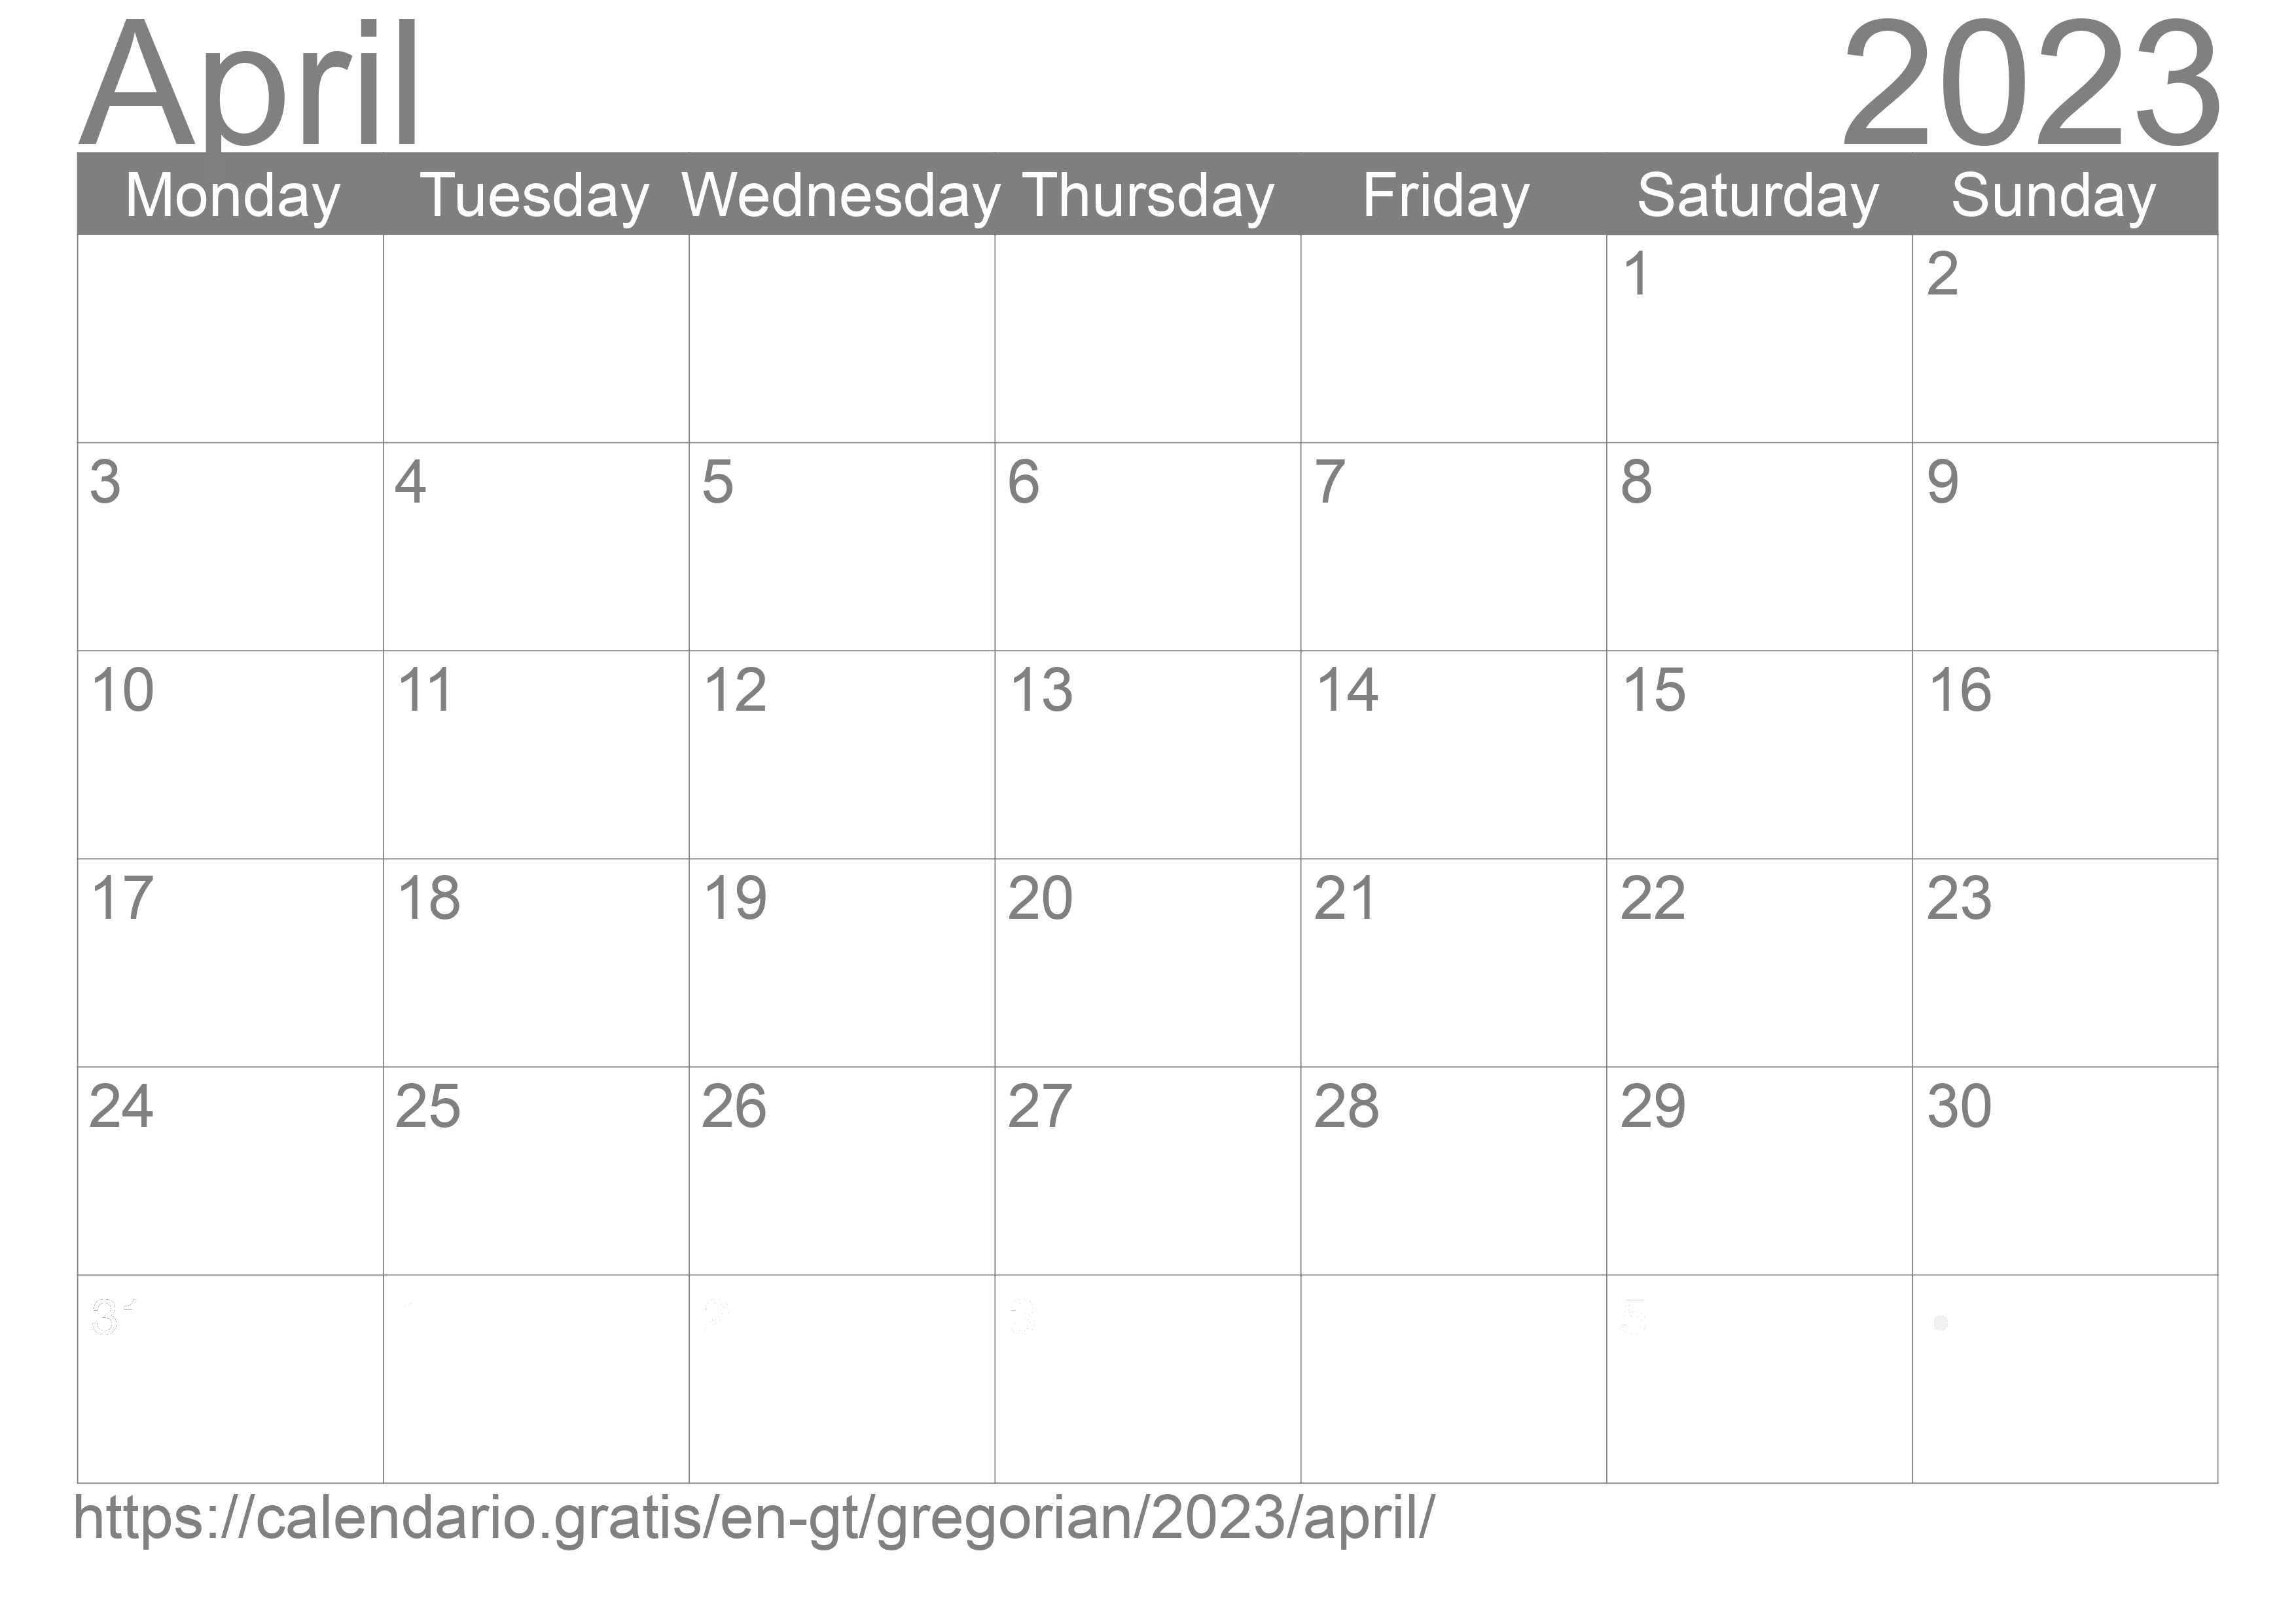 Calendar April 2023 to print